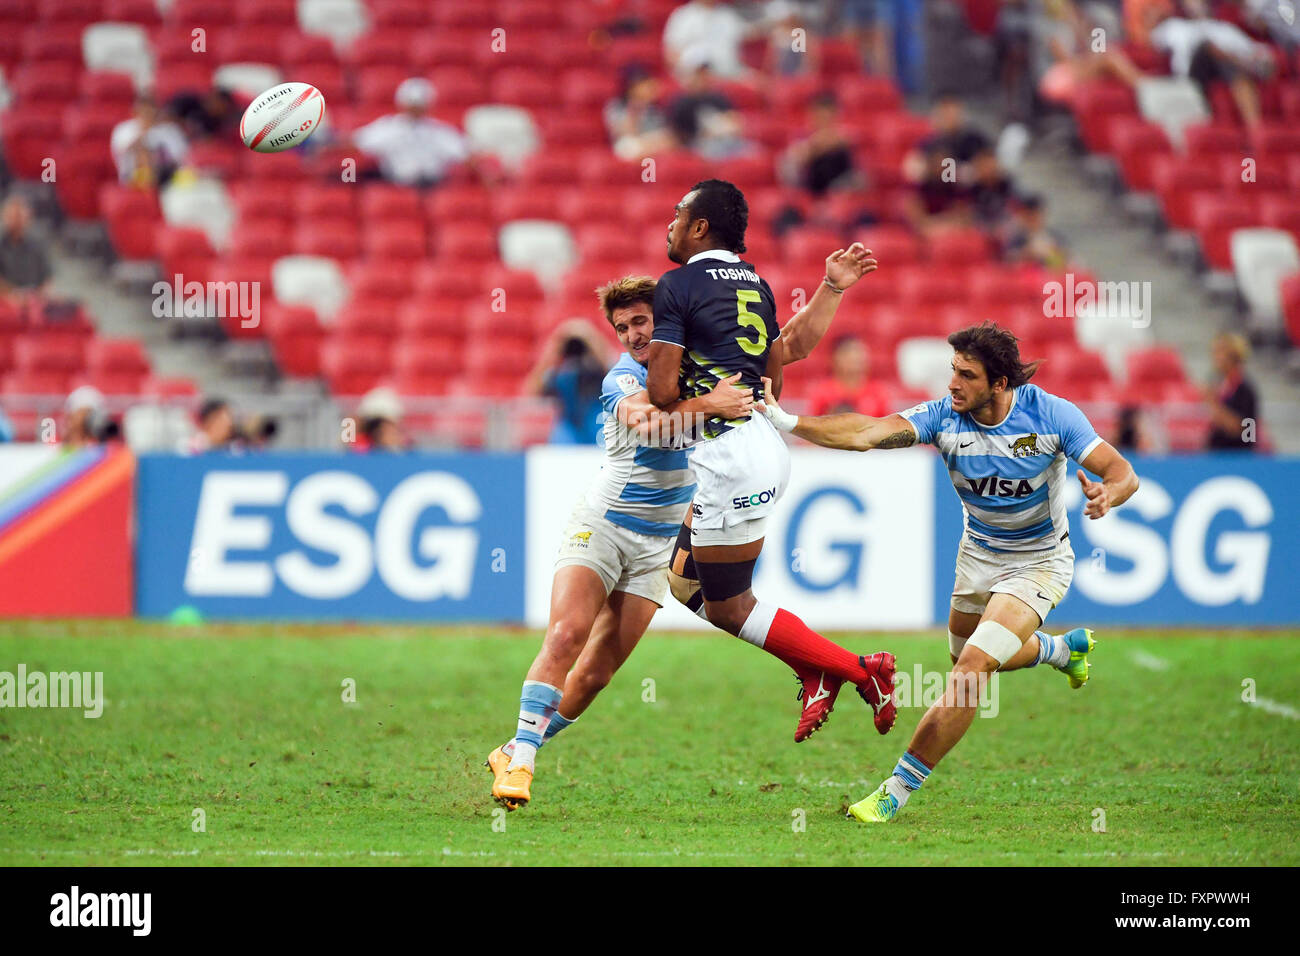 Kameli Soejima (JPN), APRL 16, 2016 - Rugby Sevens World Series HSBC : Singapour, match de rugby à VII Le Japon et l'Argentine au Stade National de Singapour. (Photo de Haruhiko Otsuka/AFLO) Banque D'Images